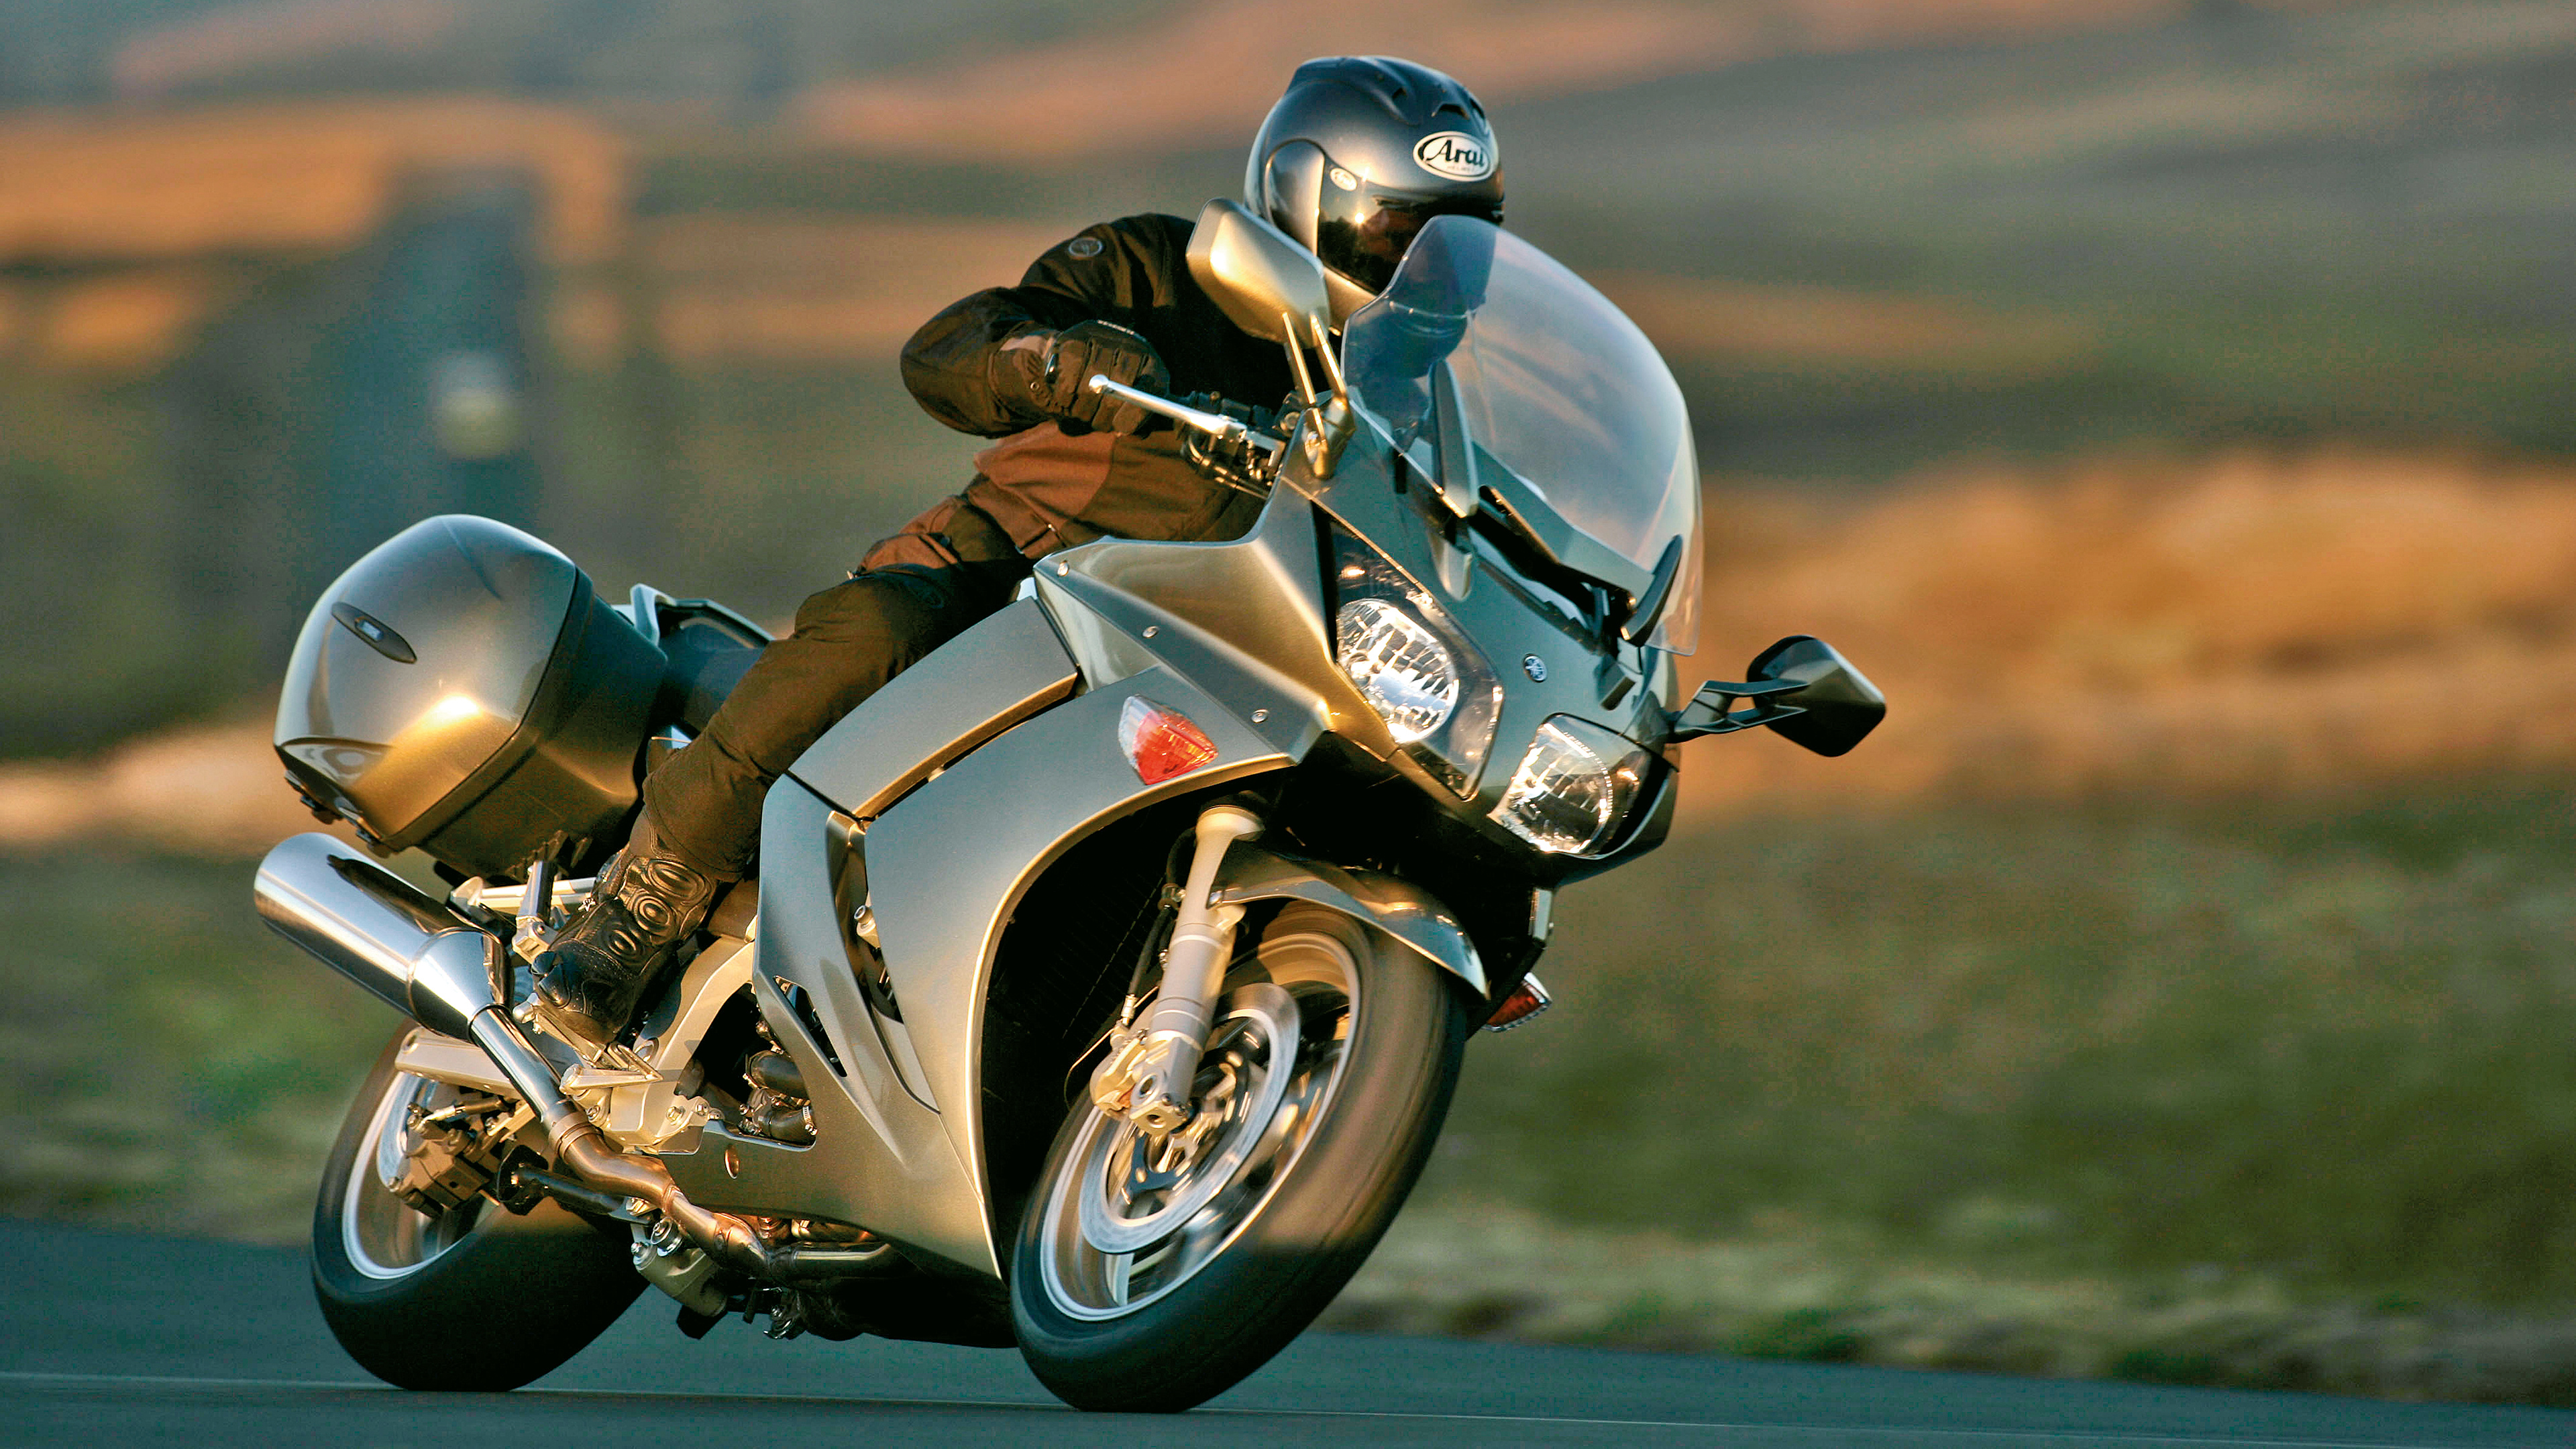 Yamaha FJR1300, Auto, Motorcycle, 3840x2160 4K Desktop